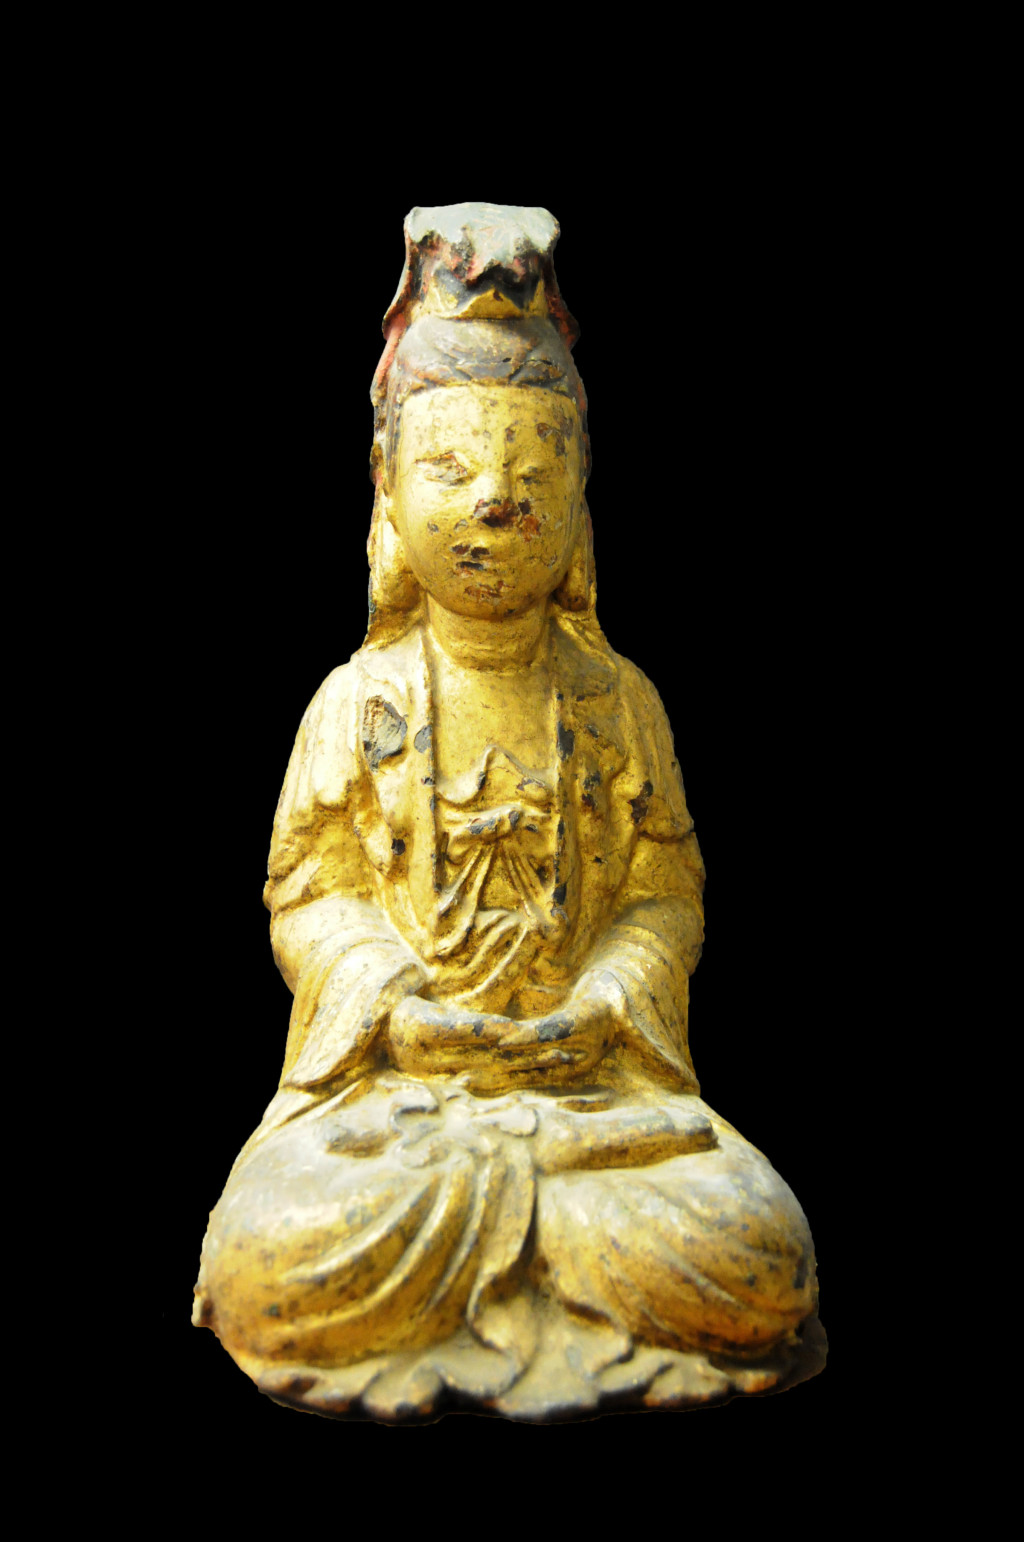 Photograph of a Buddha sculpture